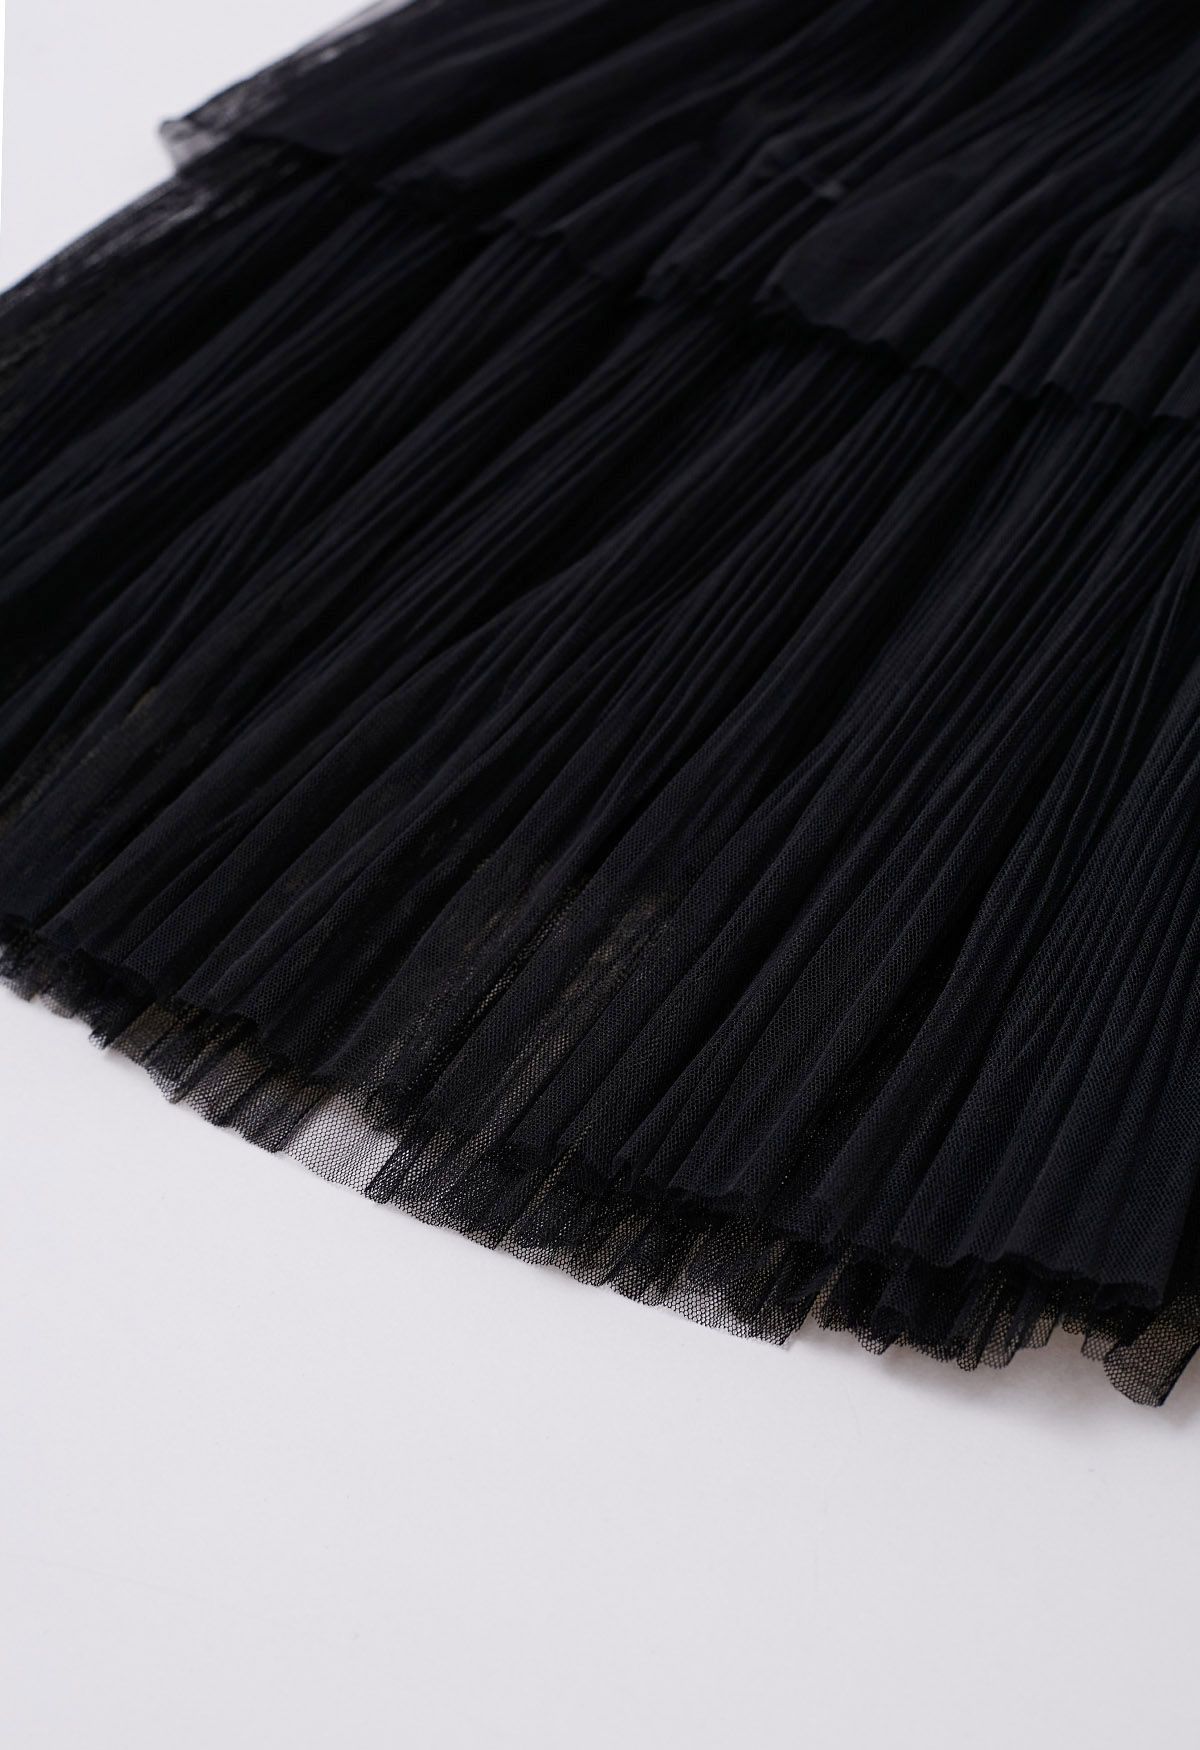 Falda de tul de malla escalonada plisada con adornos de lazo en negro